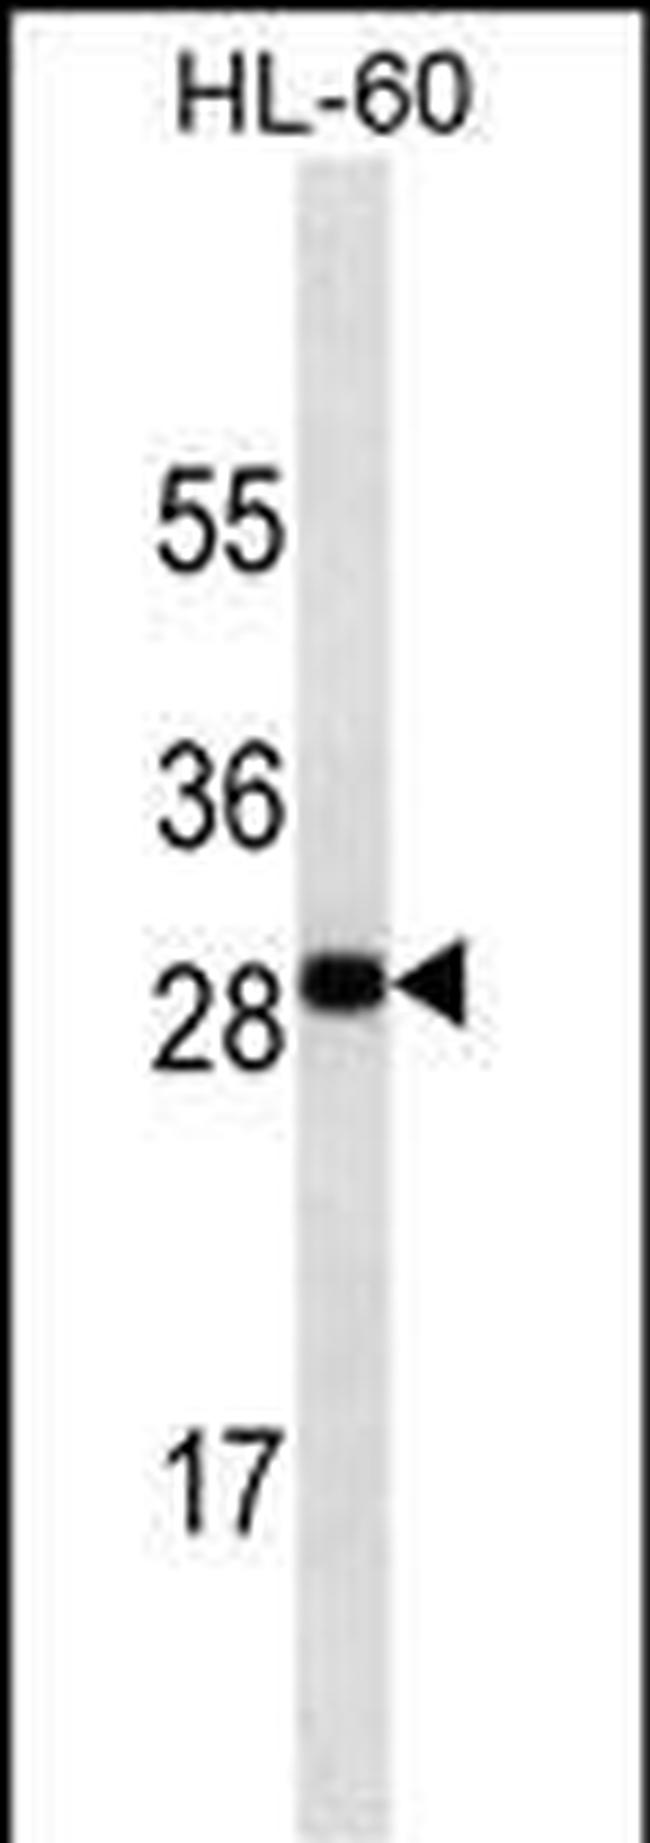 OX40L Antibody in Western Blot (WB)